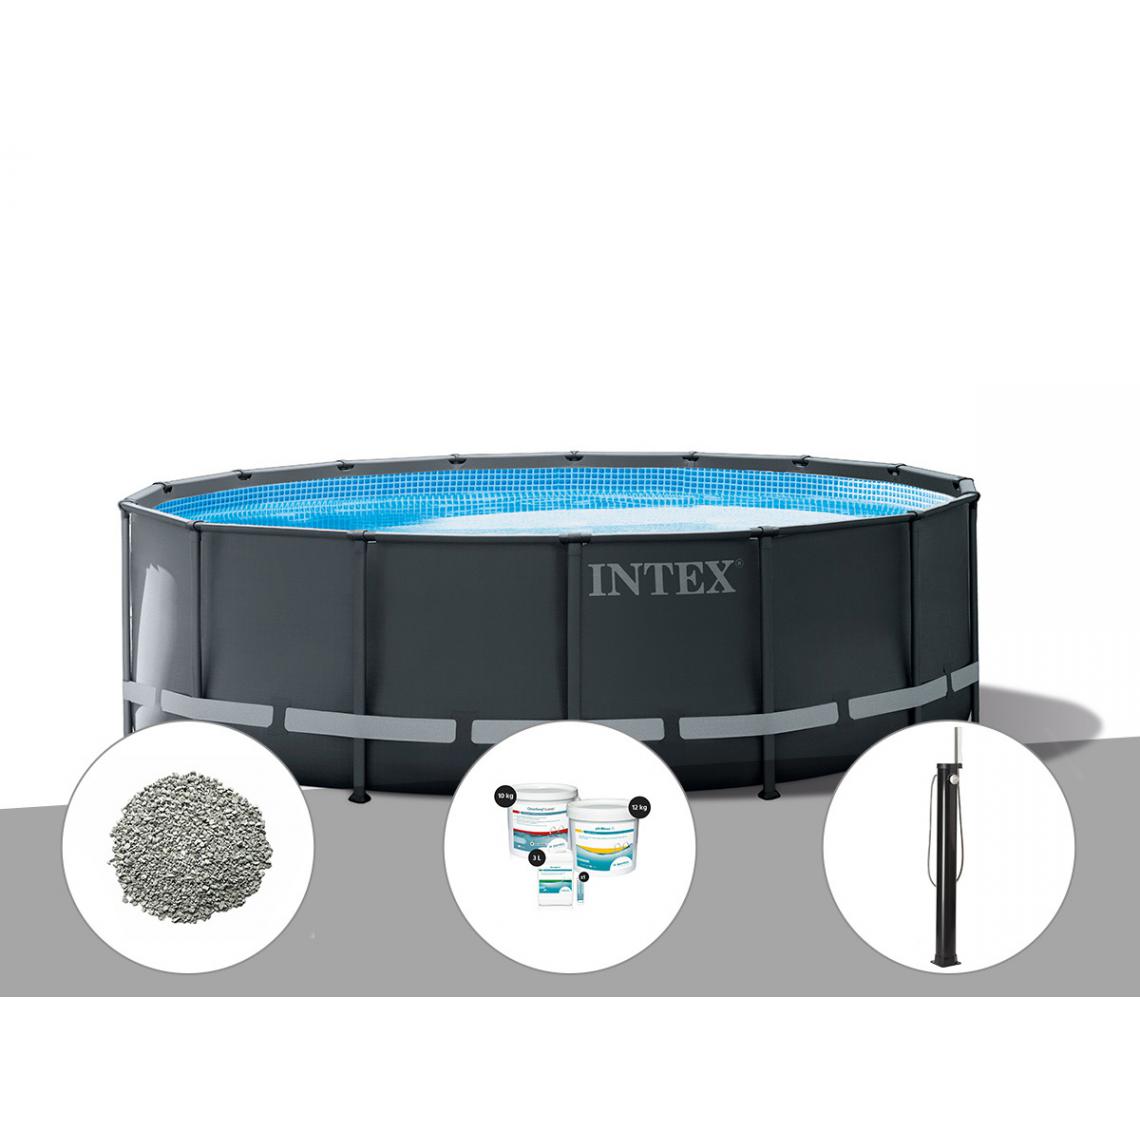 Intex - Kit piscine tubulaire Intex Ultra XTR Frame ronde 5,49 x 1,32 m + 20 kg de zéolite + Kit de traitement au chlore + Douche solaire - Piscine Tubulaire